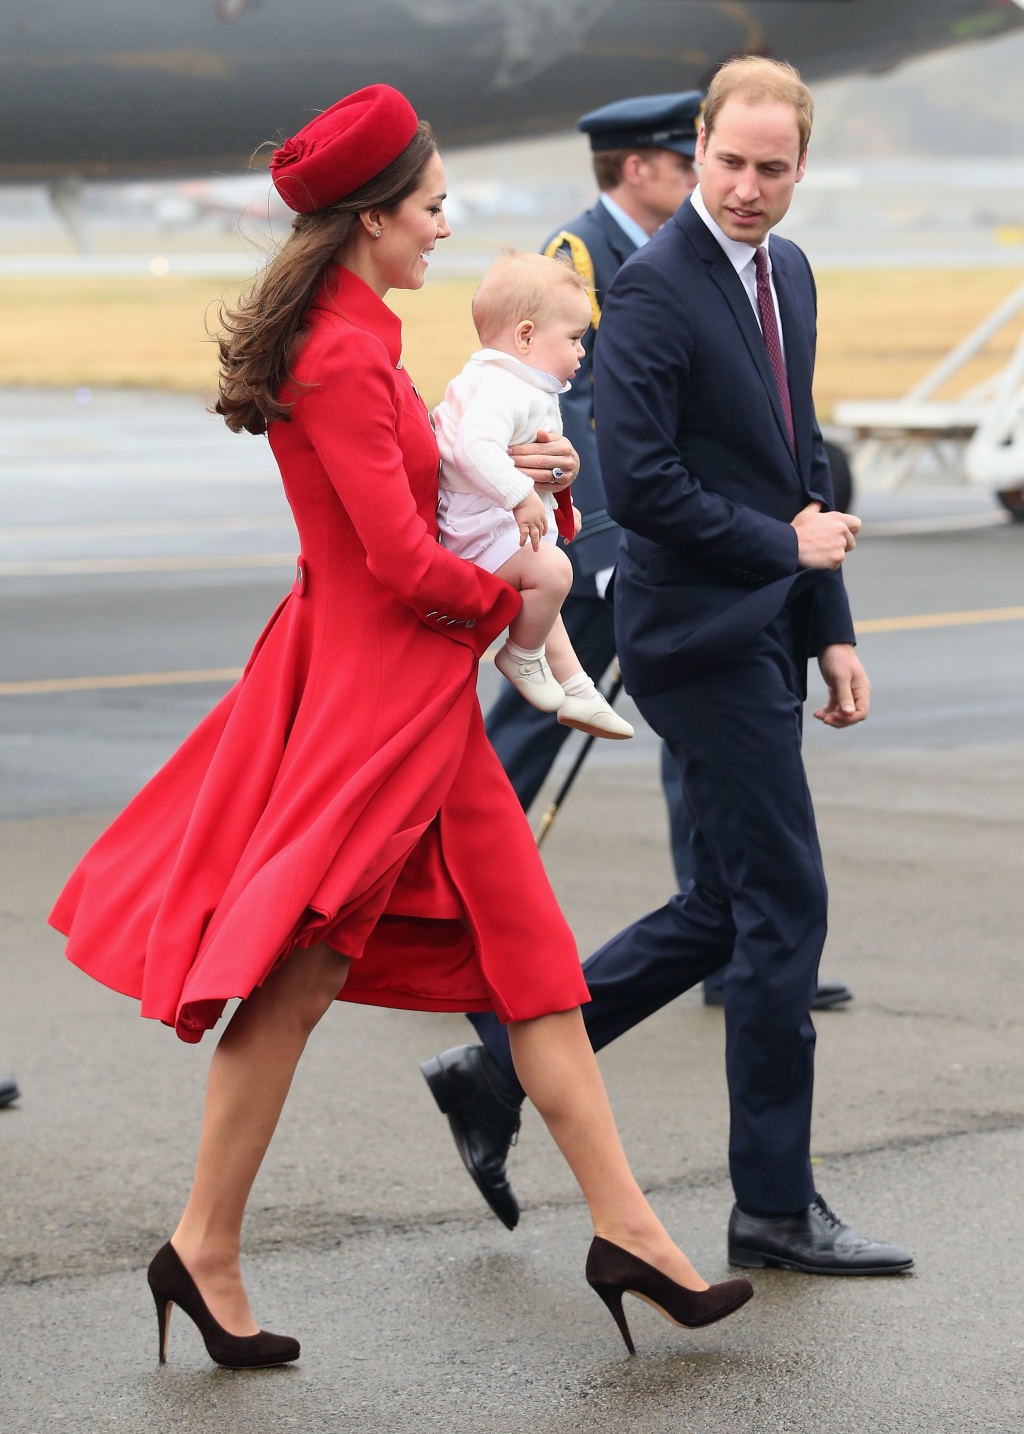 Принц Уилям, съпругата му Кейт и малкият Джордж пристигнаха в Уелингтън, Нова Зеландия, в рамките на 3-седмично пътуване, което ще продължи и в Австралия, съобщи Би Би Си. Това е първото официално посещение за 8-месечния принц Джордж. Херцогинята на Кембридж бе облечена в червено палто със златни копчета. Дрехата е дело на британската дизайнерка Катрин Уокър, която била любимка и на принцеса Даяна.